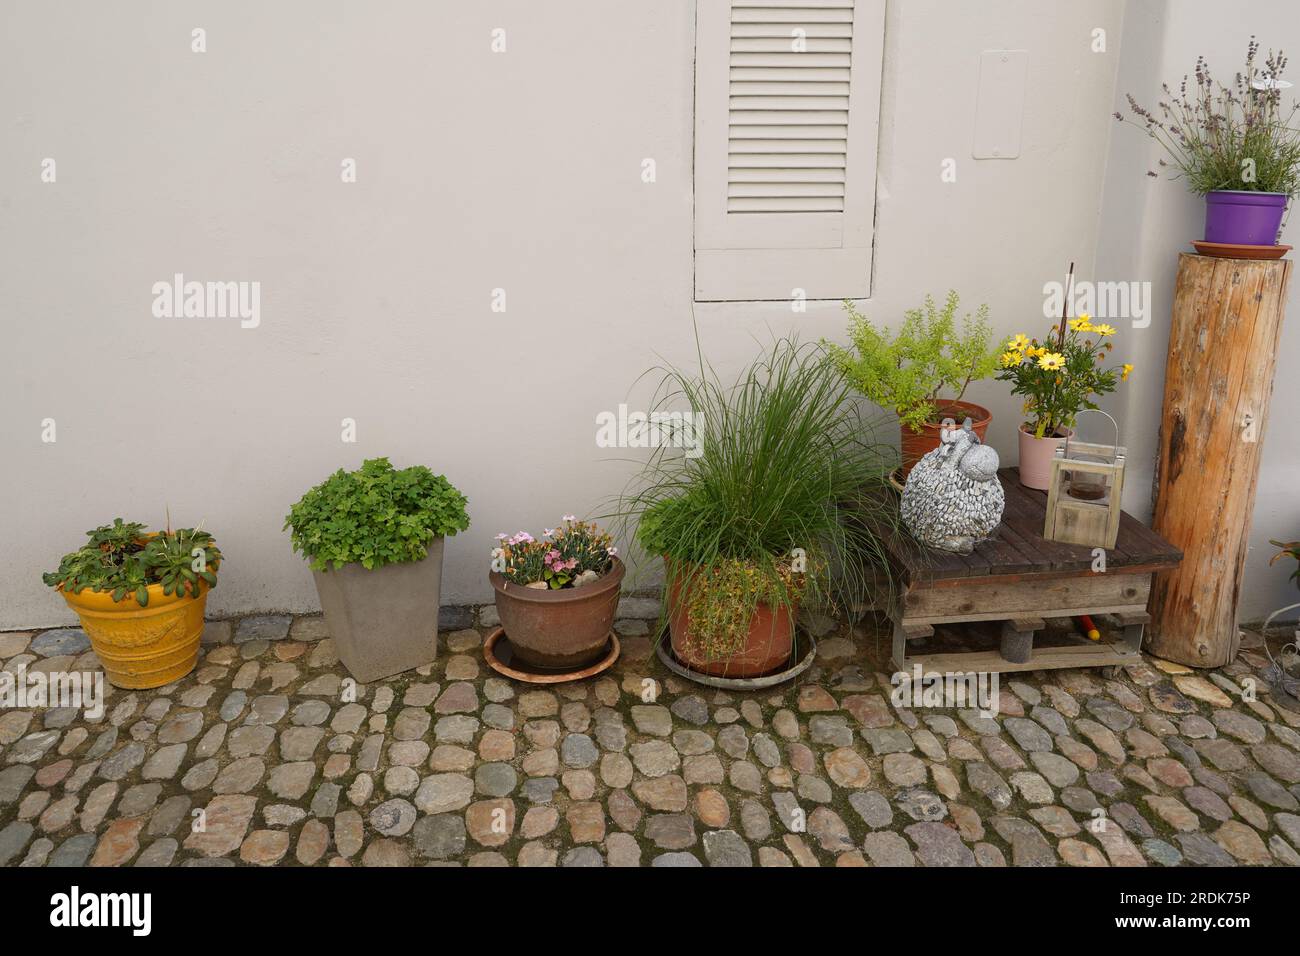 Divers pots de fleurs avec des herbes, des plantes en fleurs et des plantes succulentes placées sur le sol en pierre pavée avec un mur blanc sur le fond. Banque D'Images